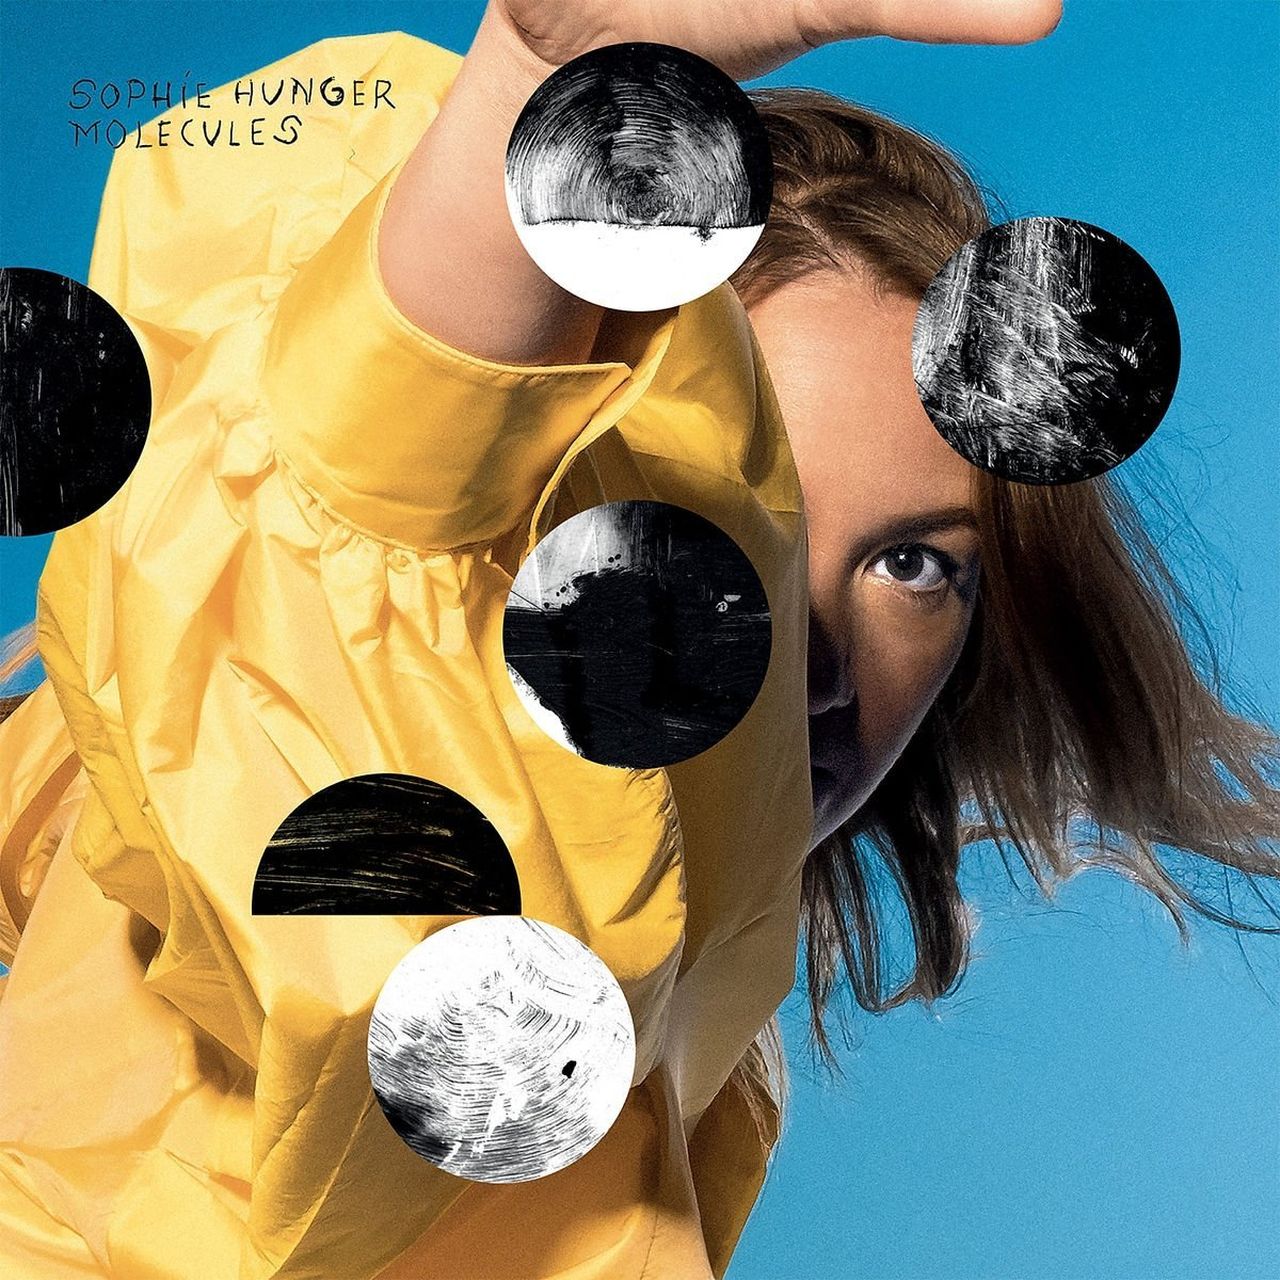 Cover - Sophie Hunger - Album 'Molecules'